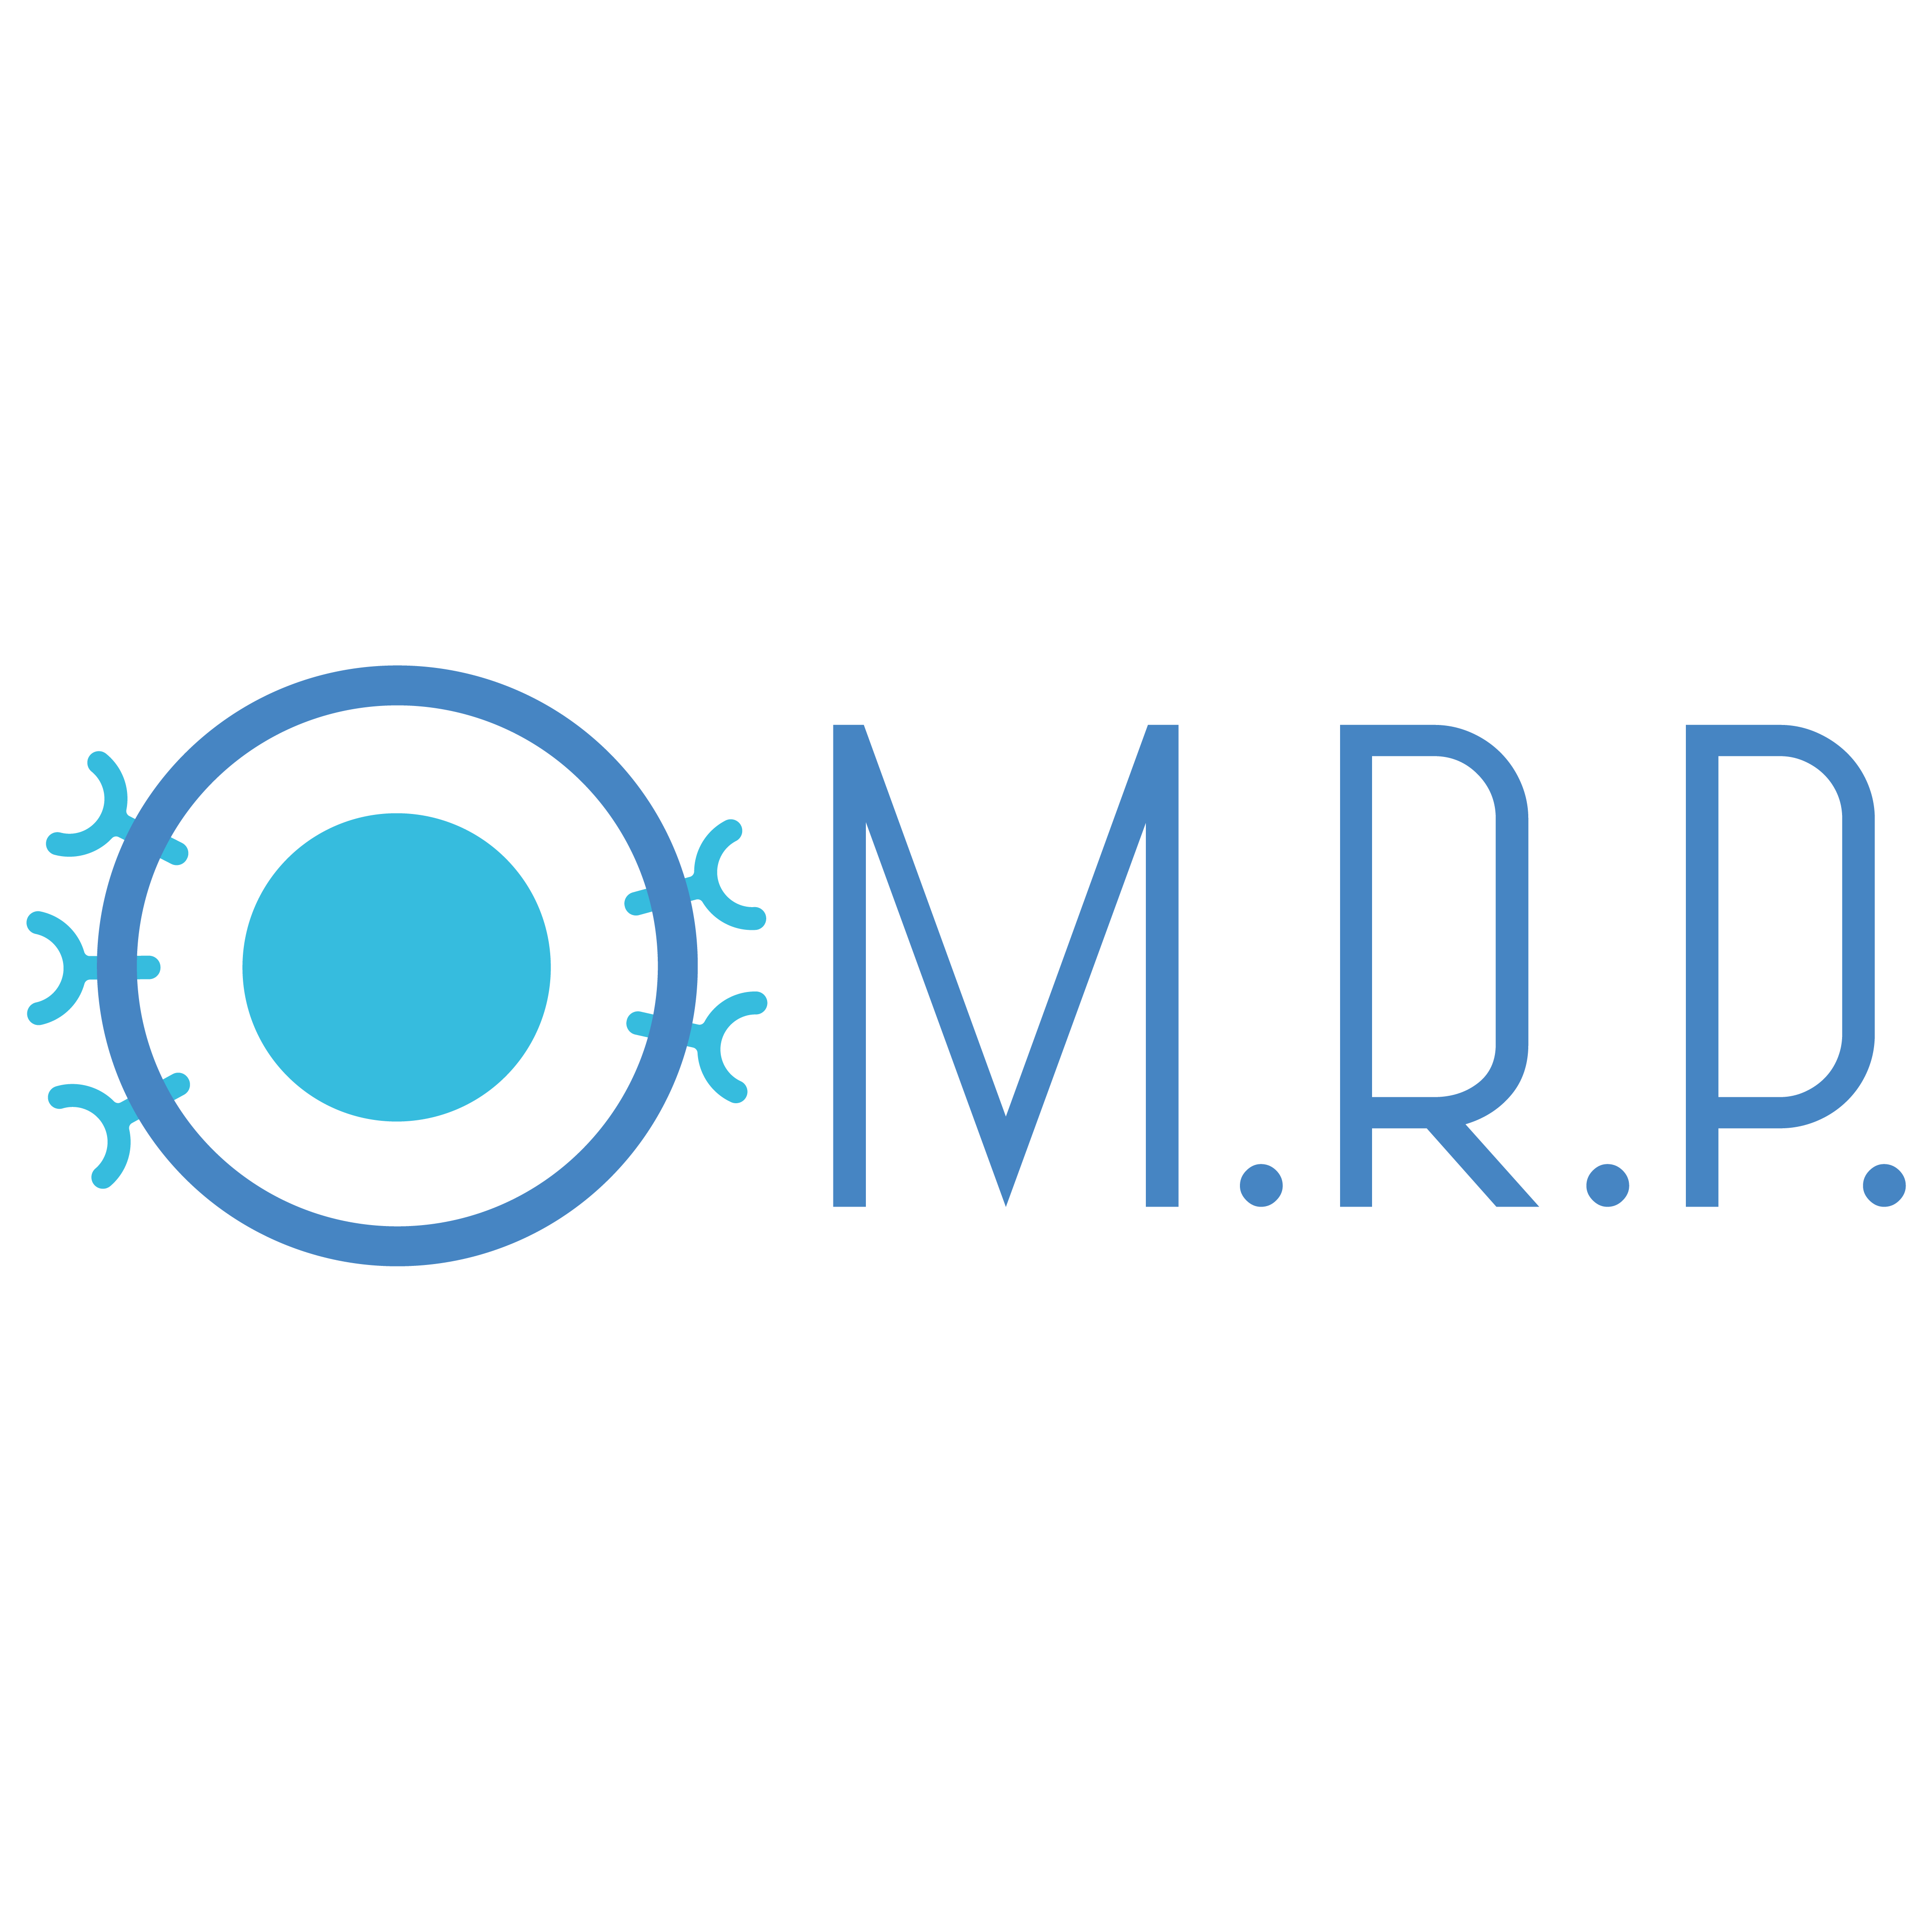 MRP Logo